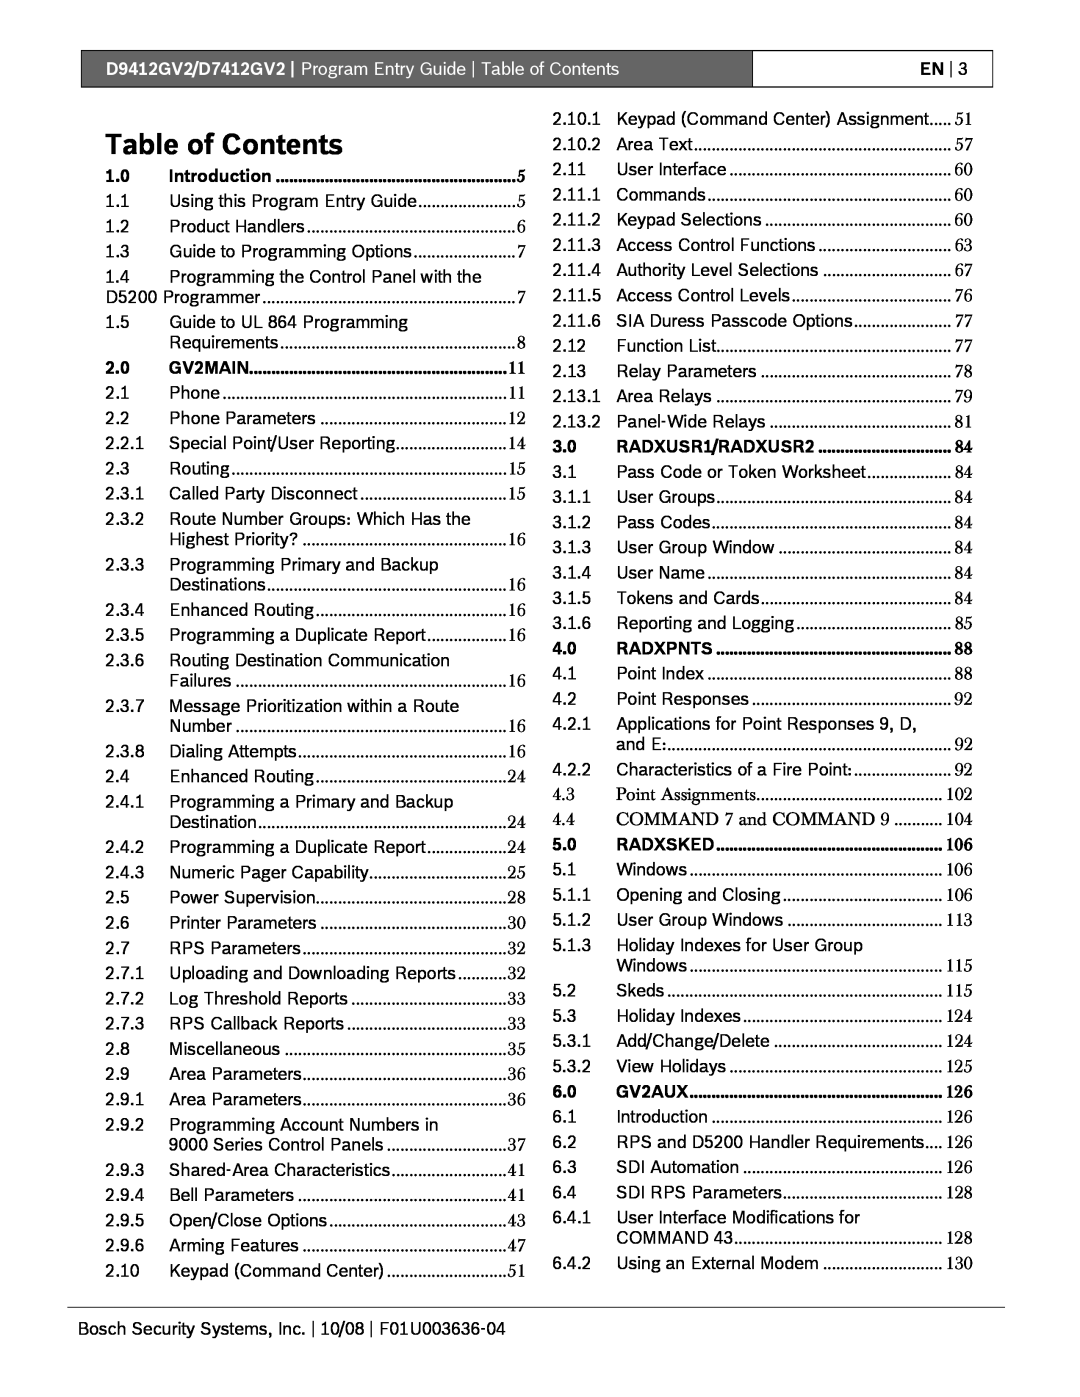 Bosch Appliances D9412GV2 manual Table of Contents, En 